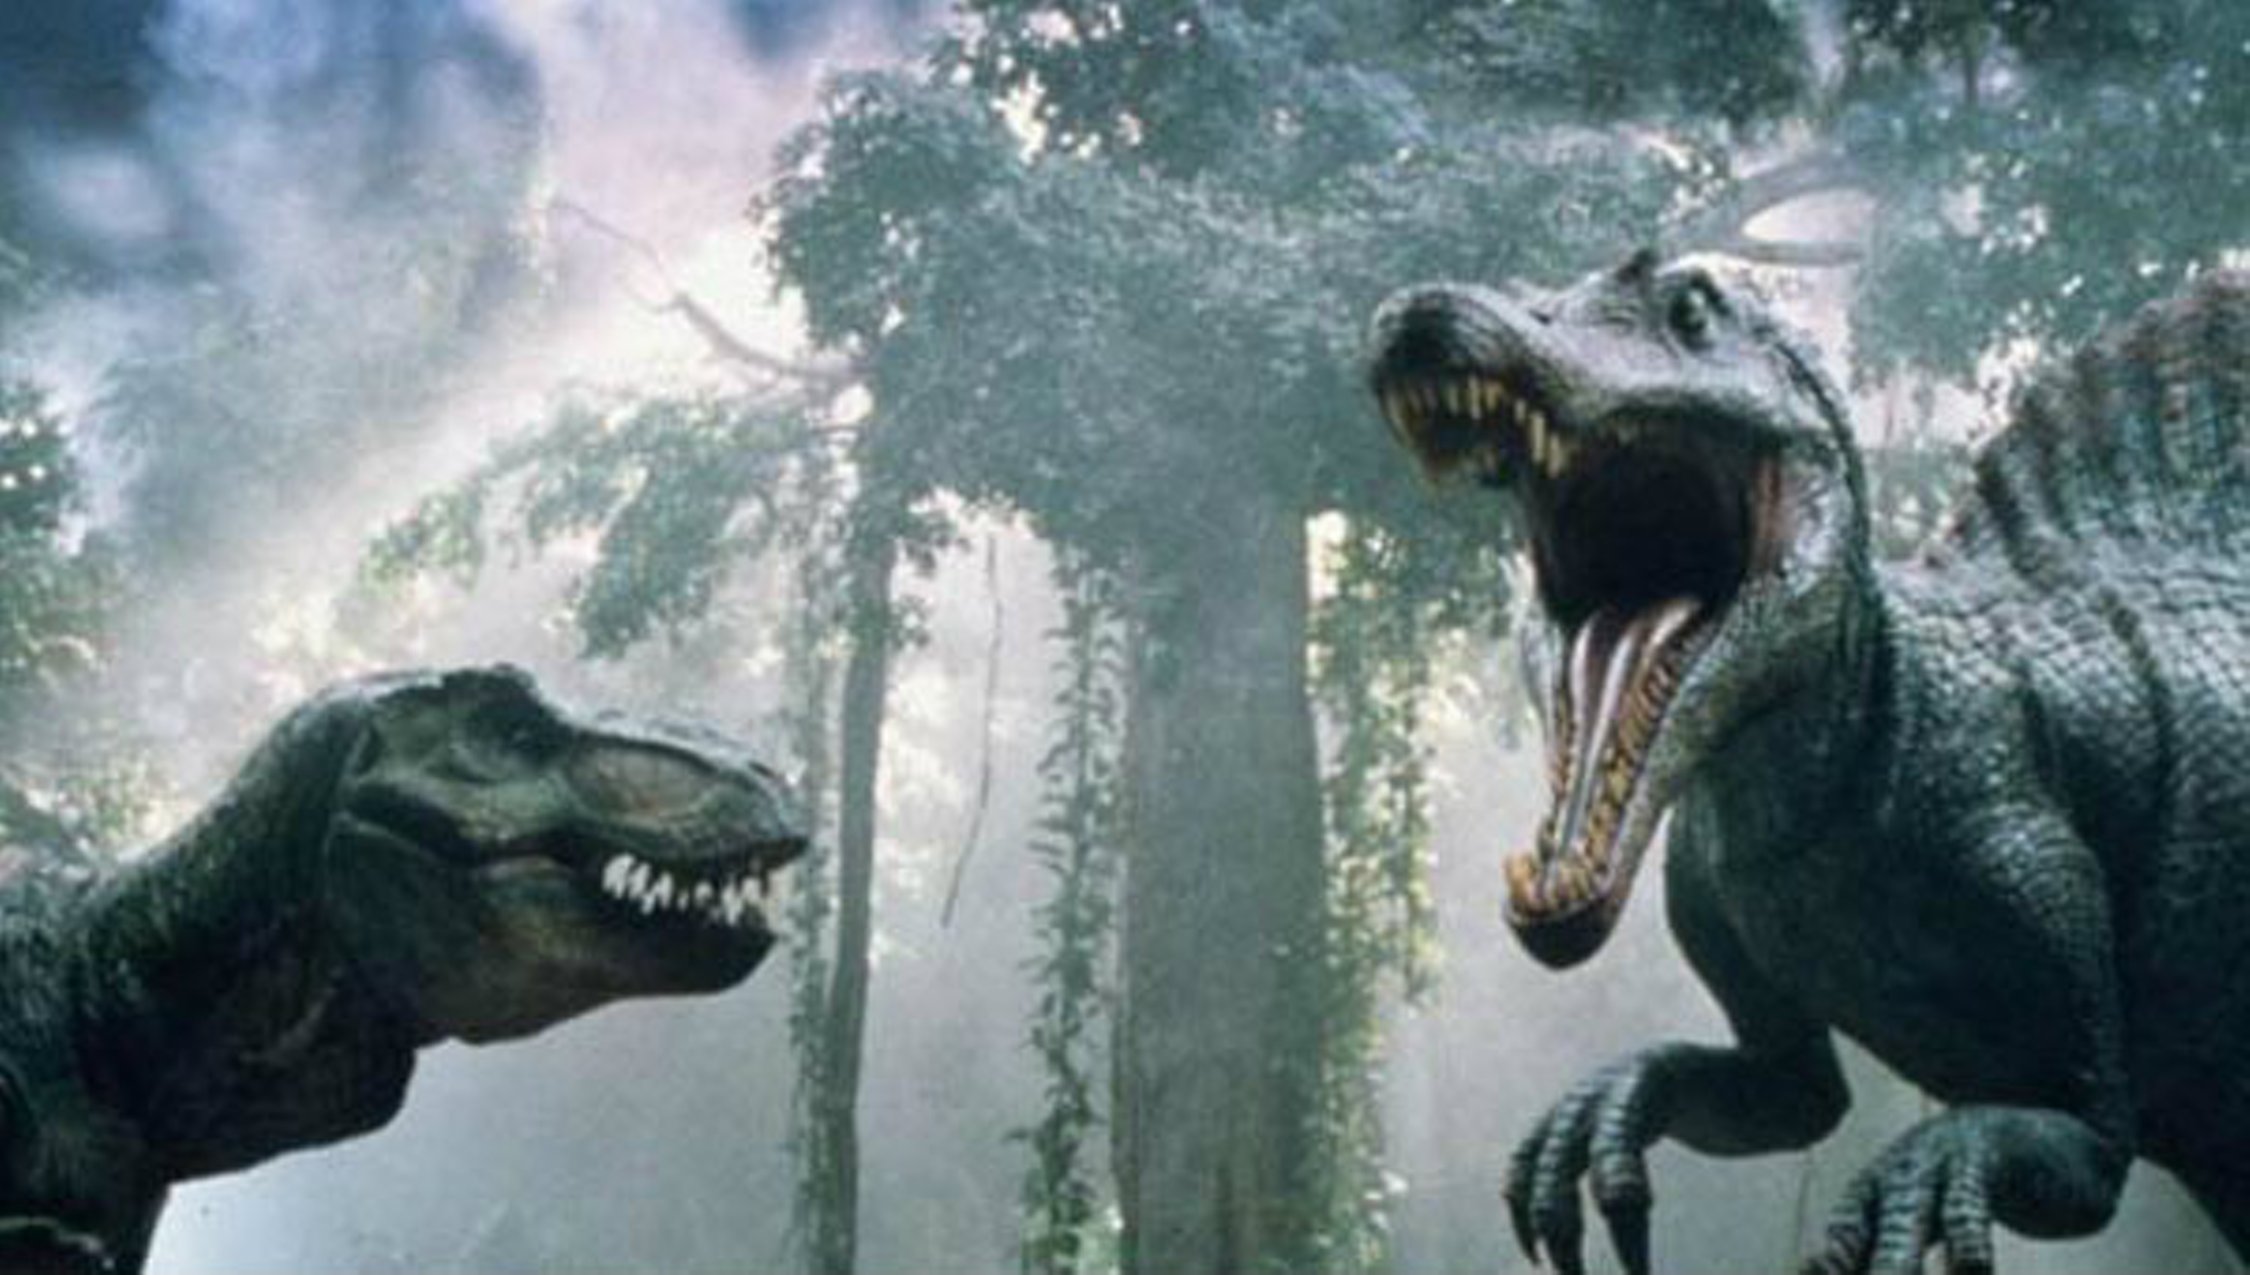 Завтра на улице вам встретится живой динозавр. Парк Юрского периода 3. Спинозавр Jurassic Park 3. Тираннозавр против Спинозавра парк Юрского периода 3. Парк Юрского периода 3 Тираннозавр vs Спинозавр.